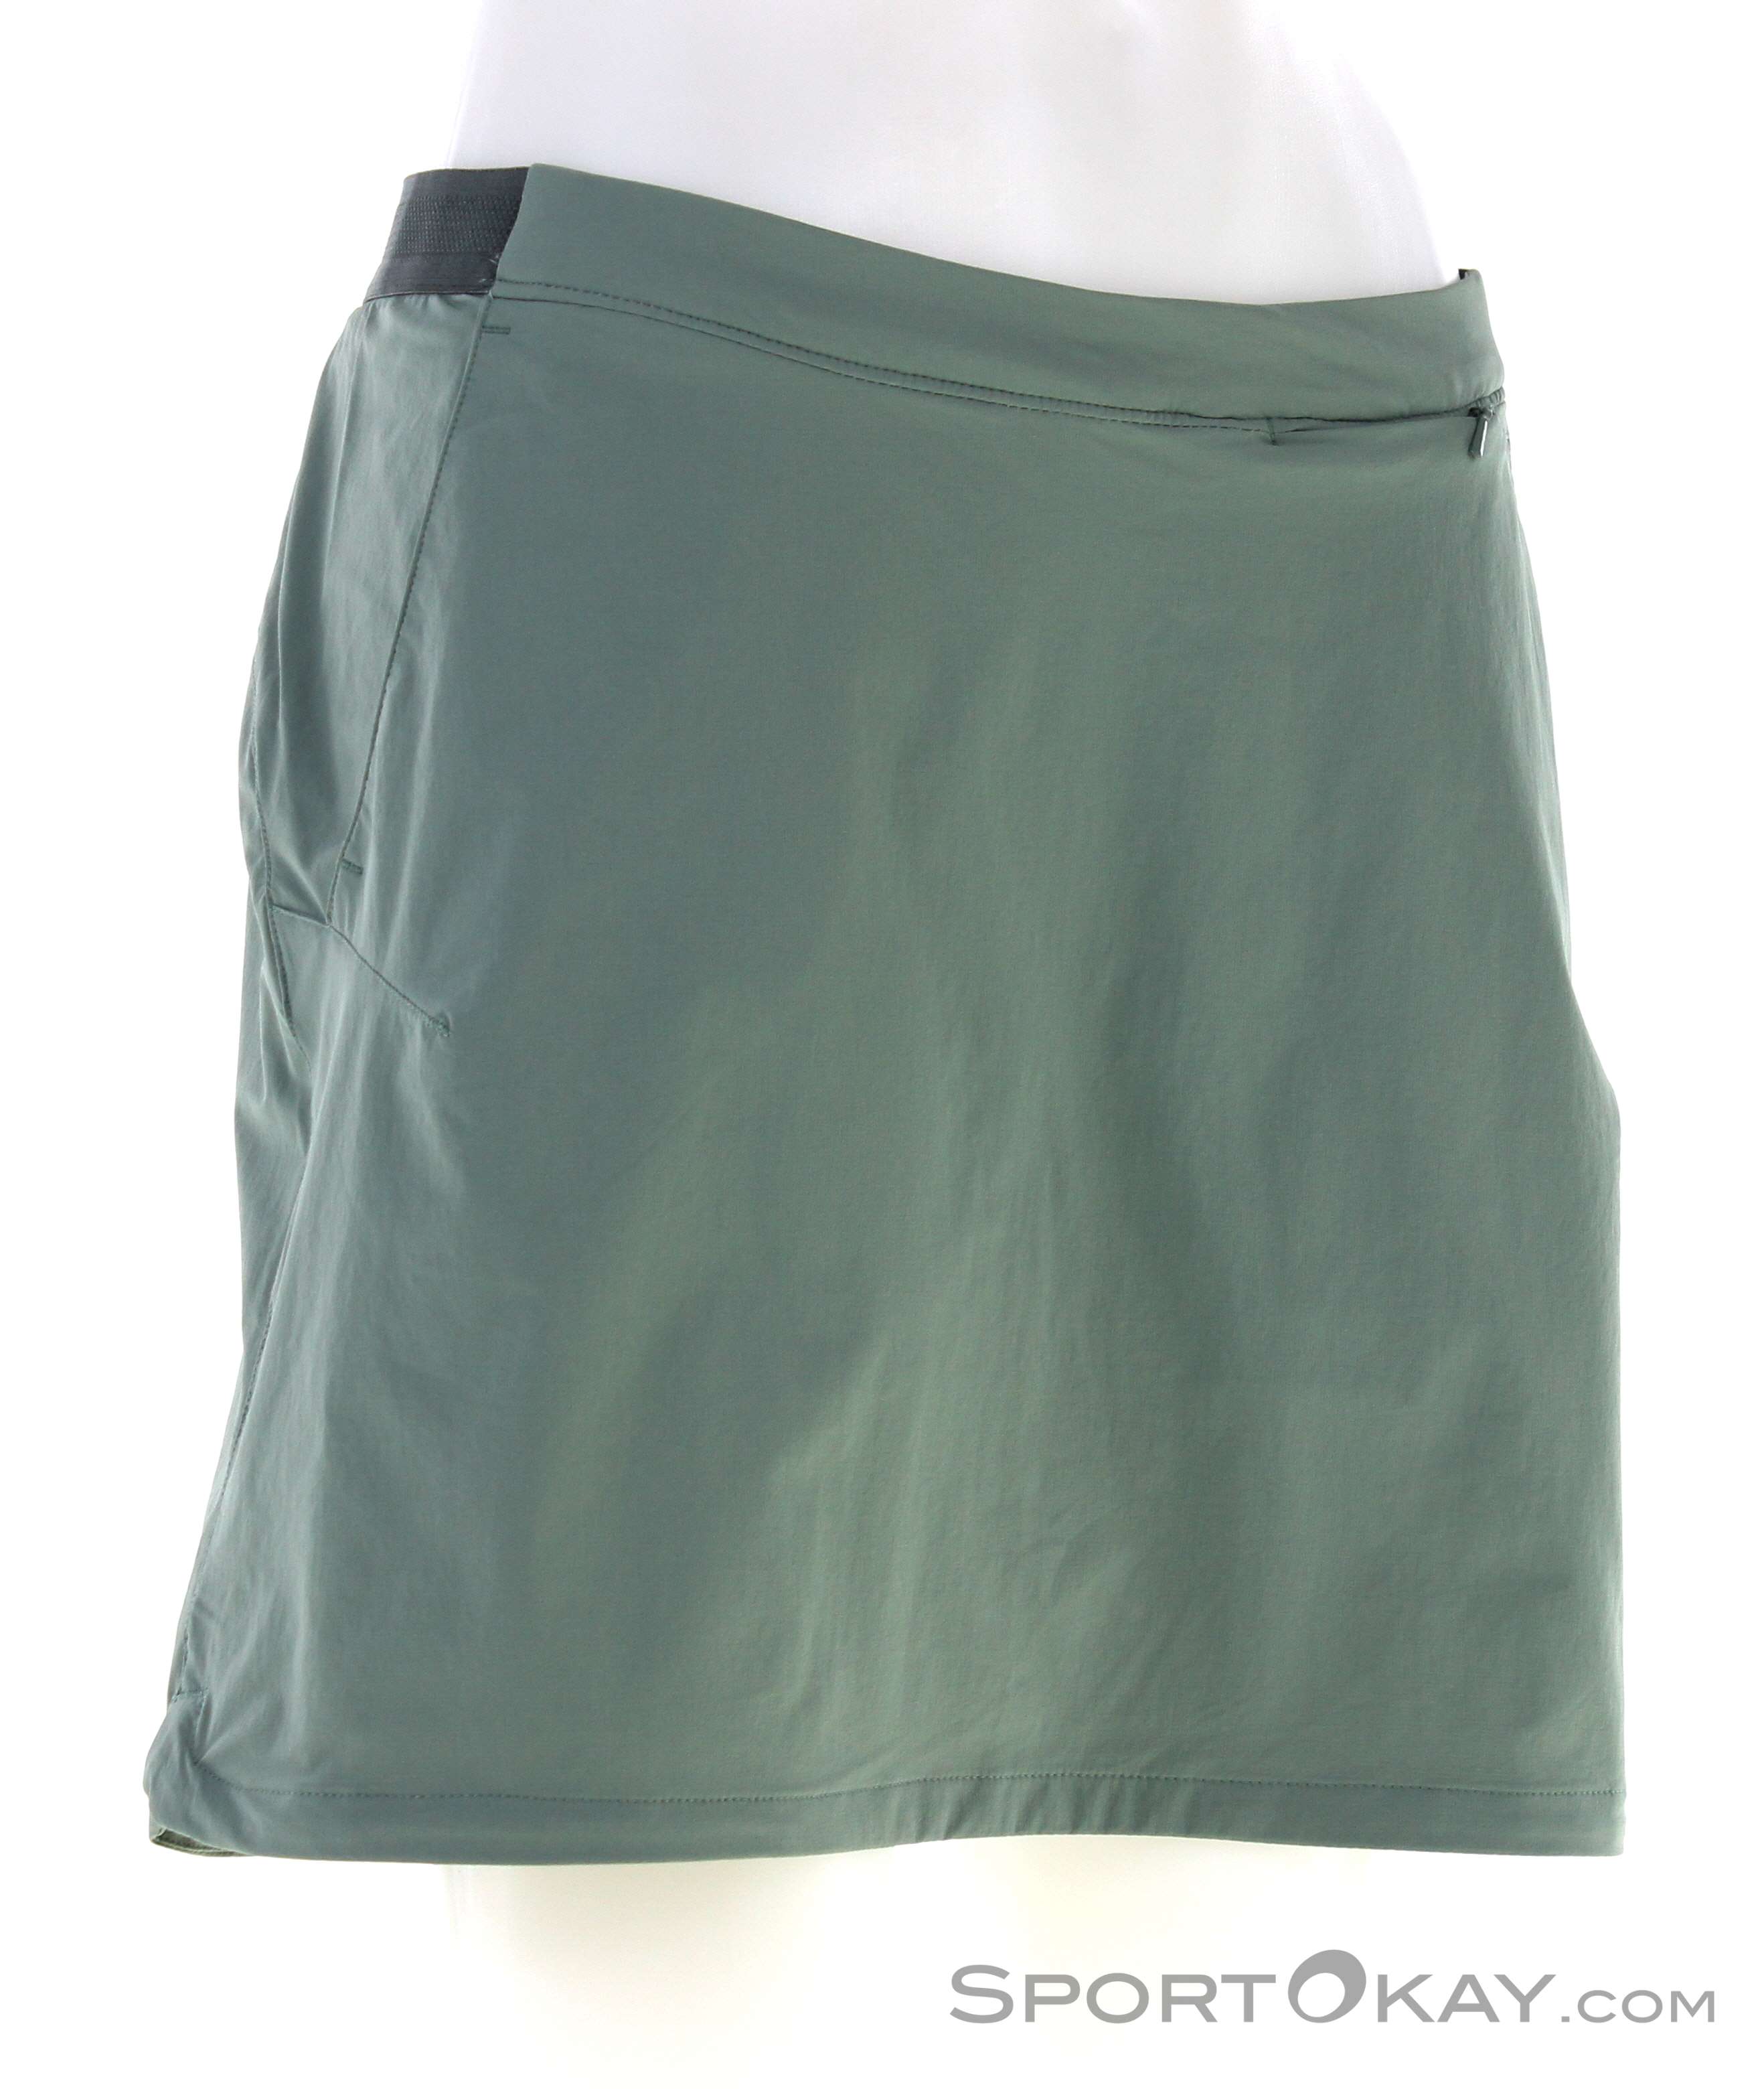 Hilltop - Outdoor Skirt - Pants Clothing Women - Jack - Wolfskin All Skort Outdoor Outdoor Trail